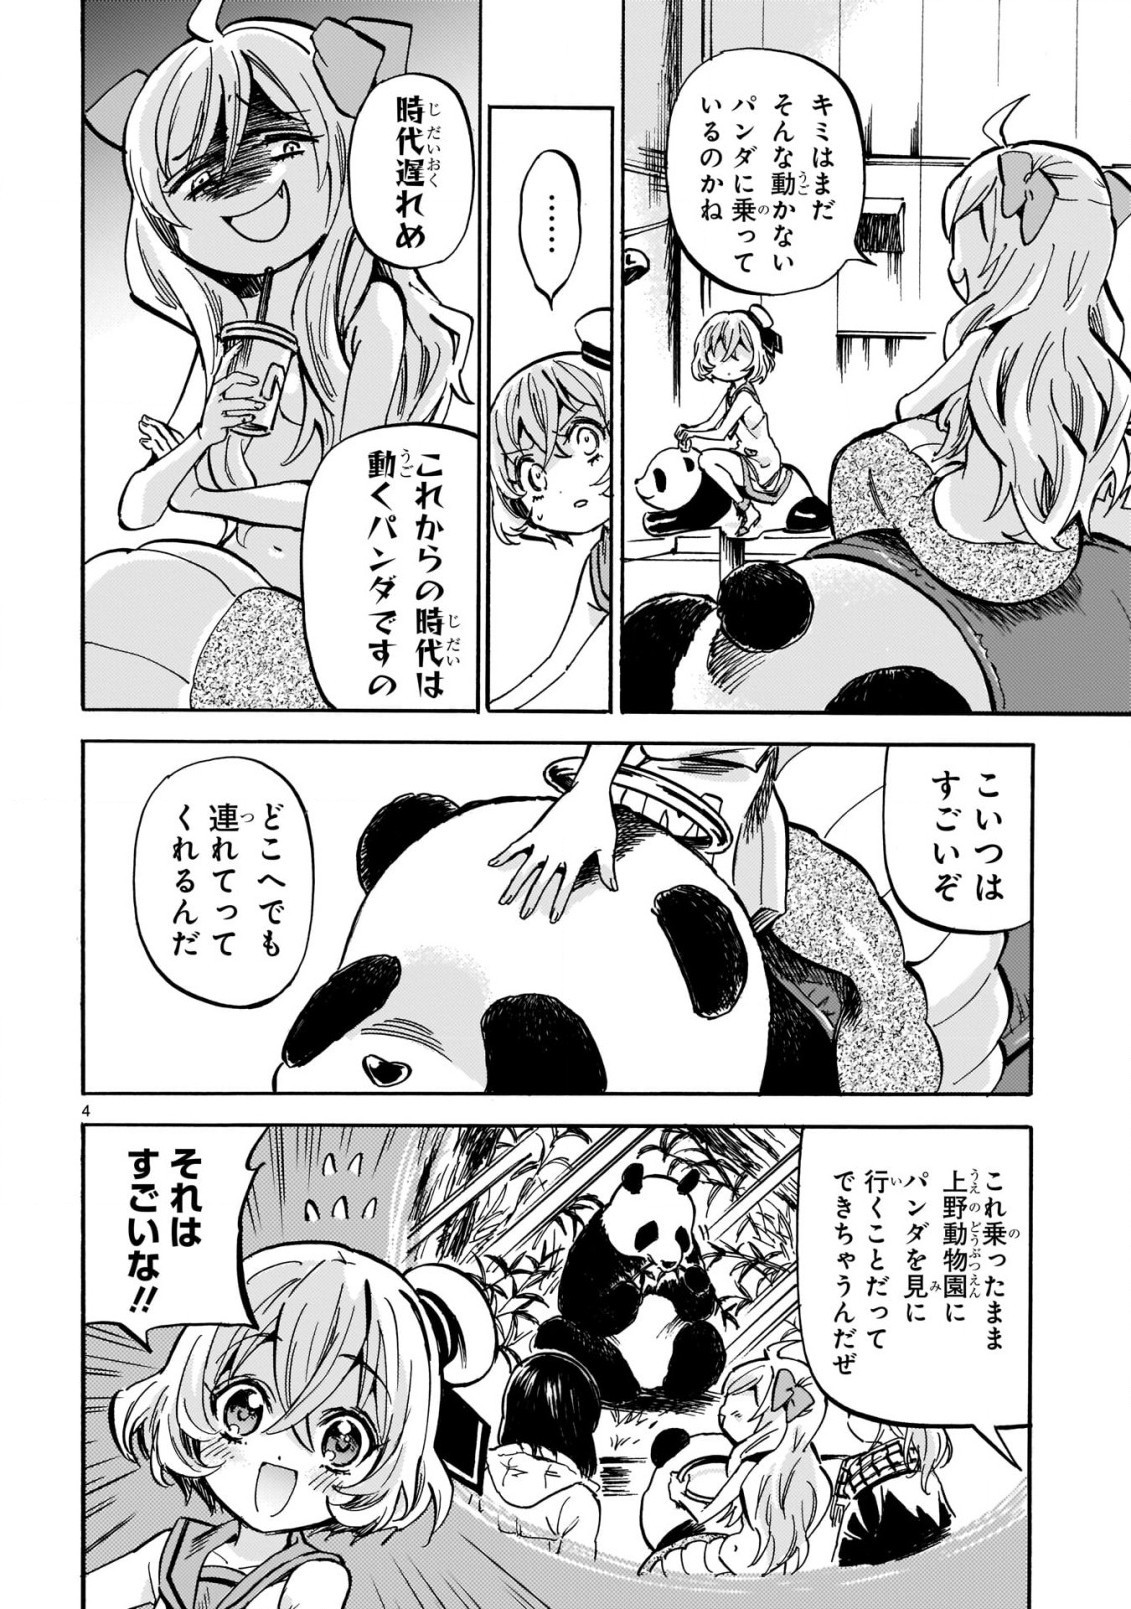 Jashin-chan Dropkick - Chapter 207 - Page 4